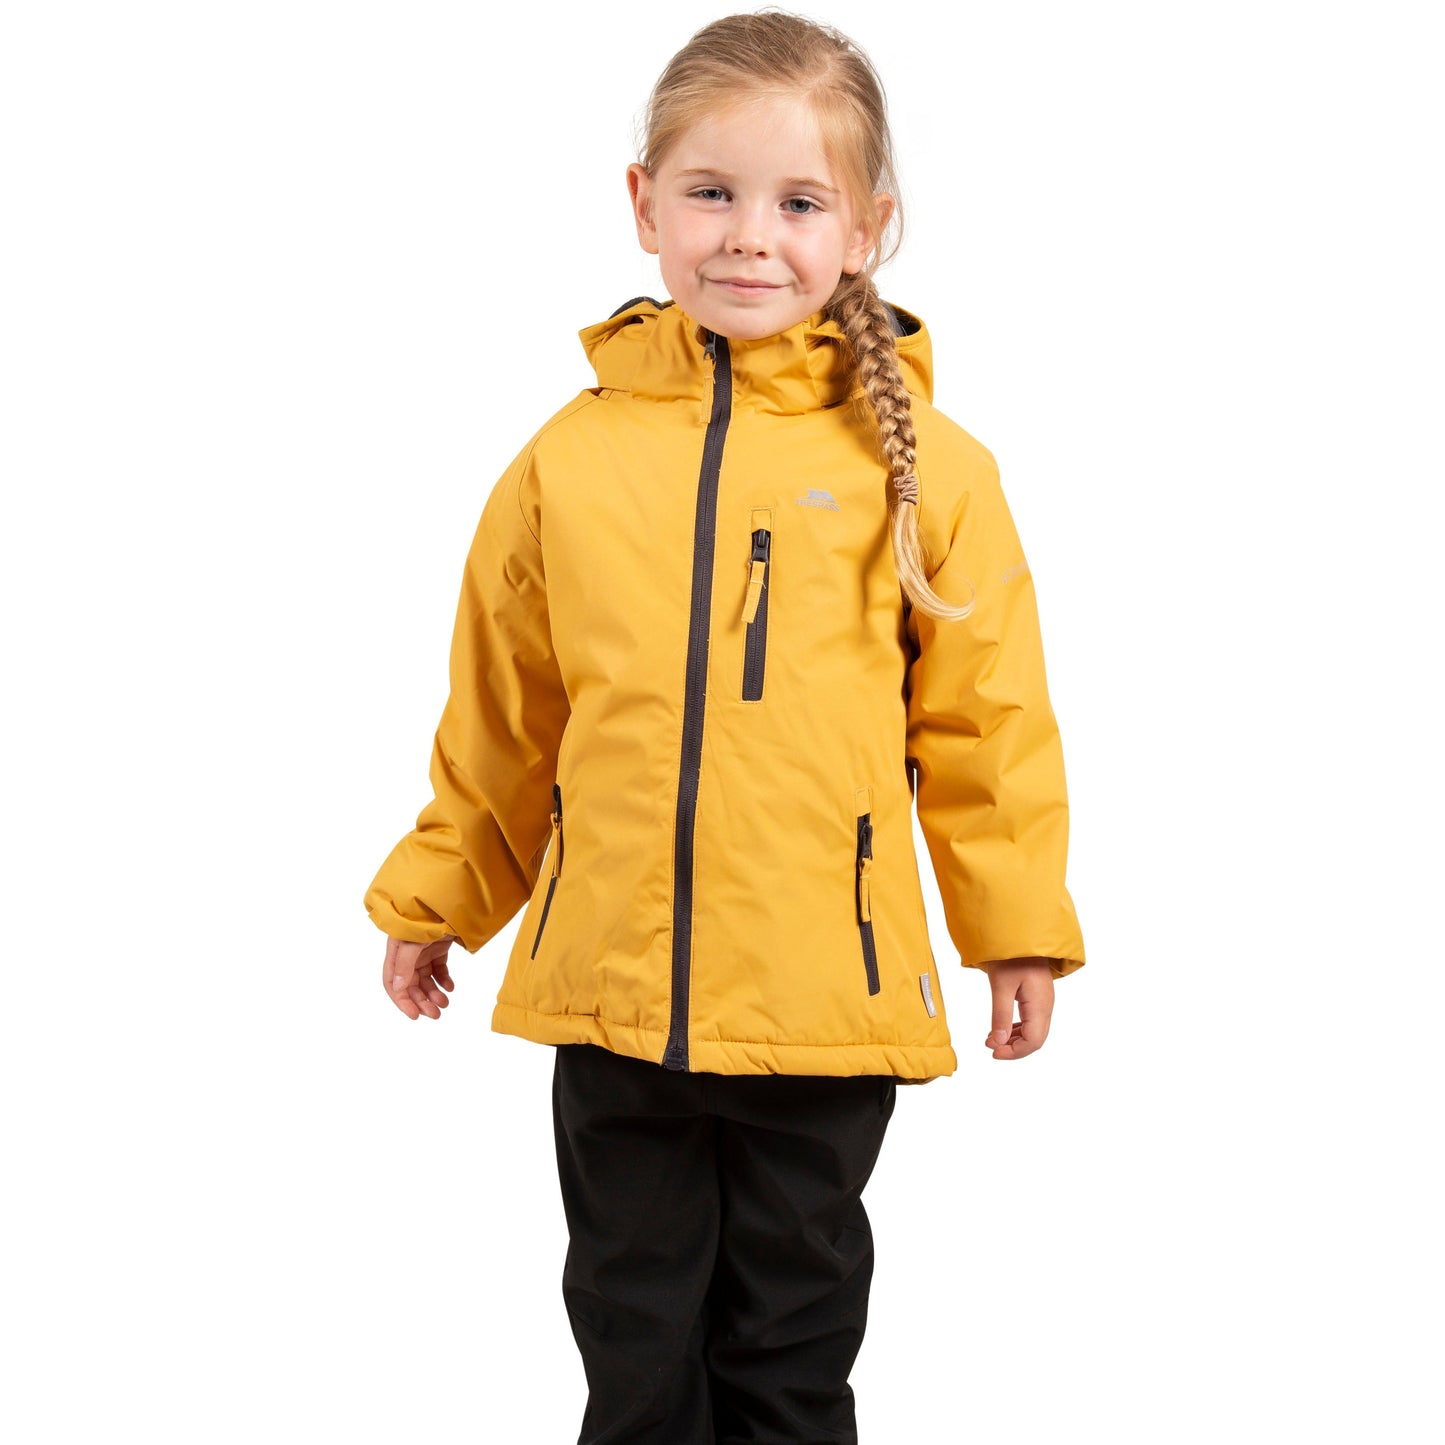 Shasta Girls Padded Waterproof Jacket in Honey Bee Yellow